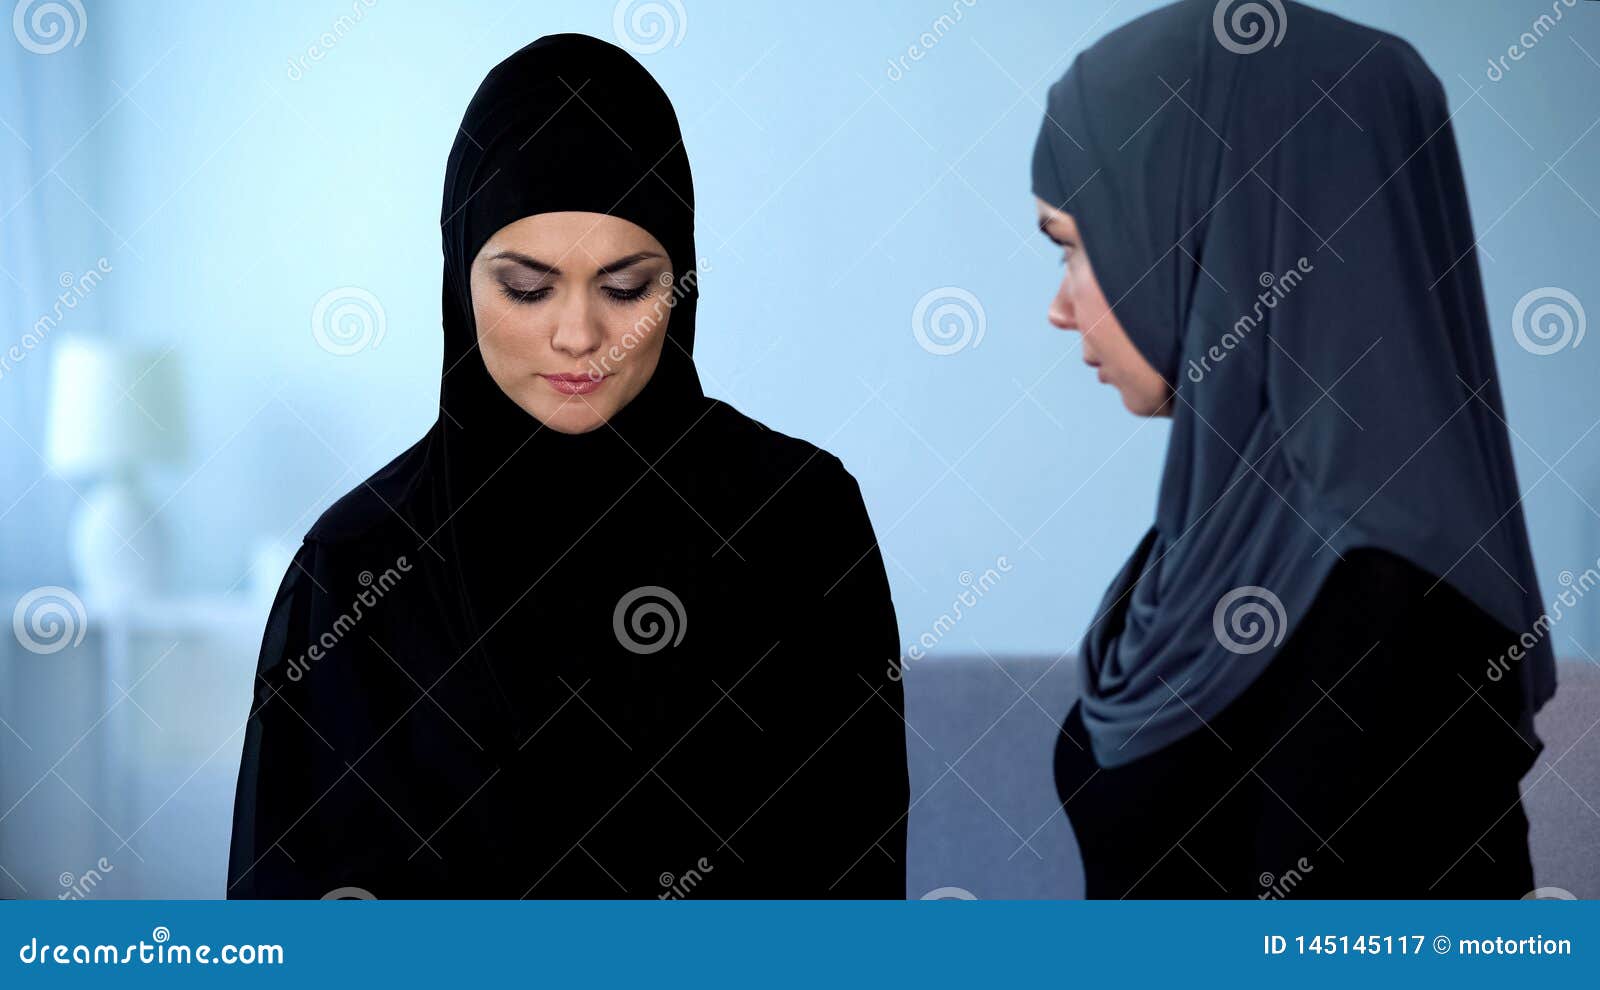 arab niqab wife friends